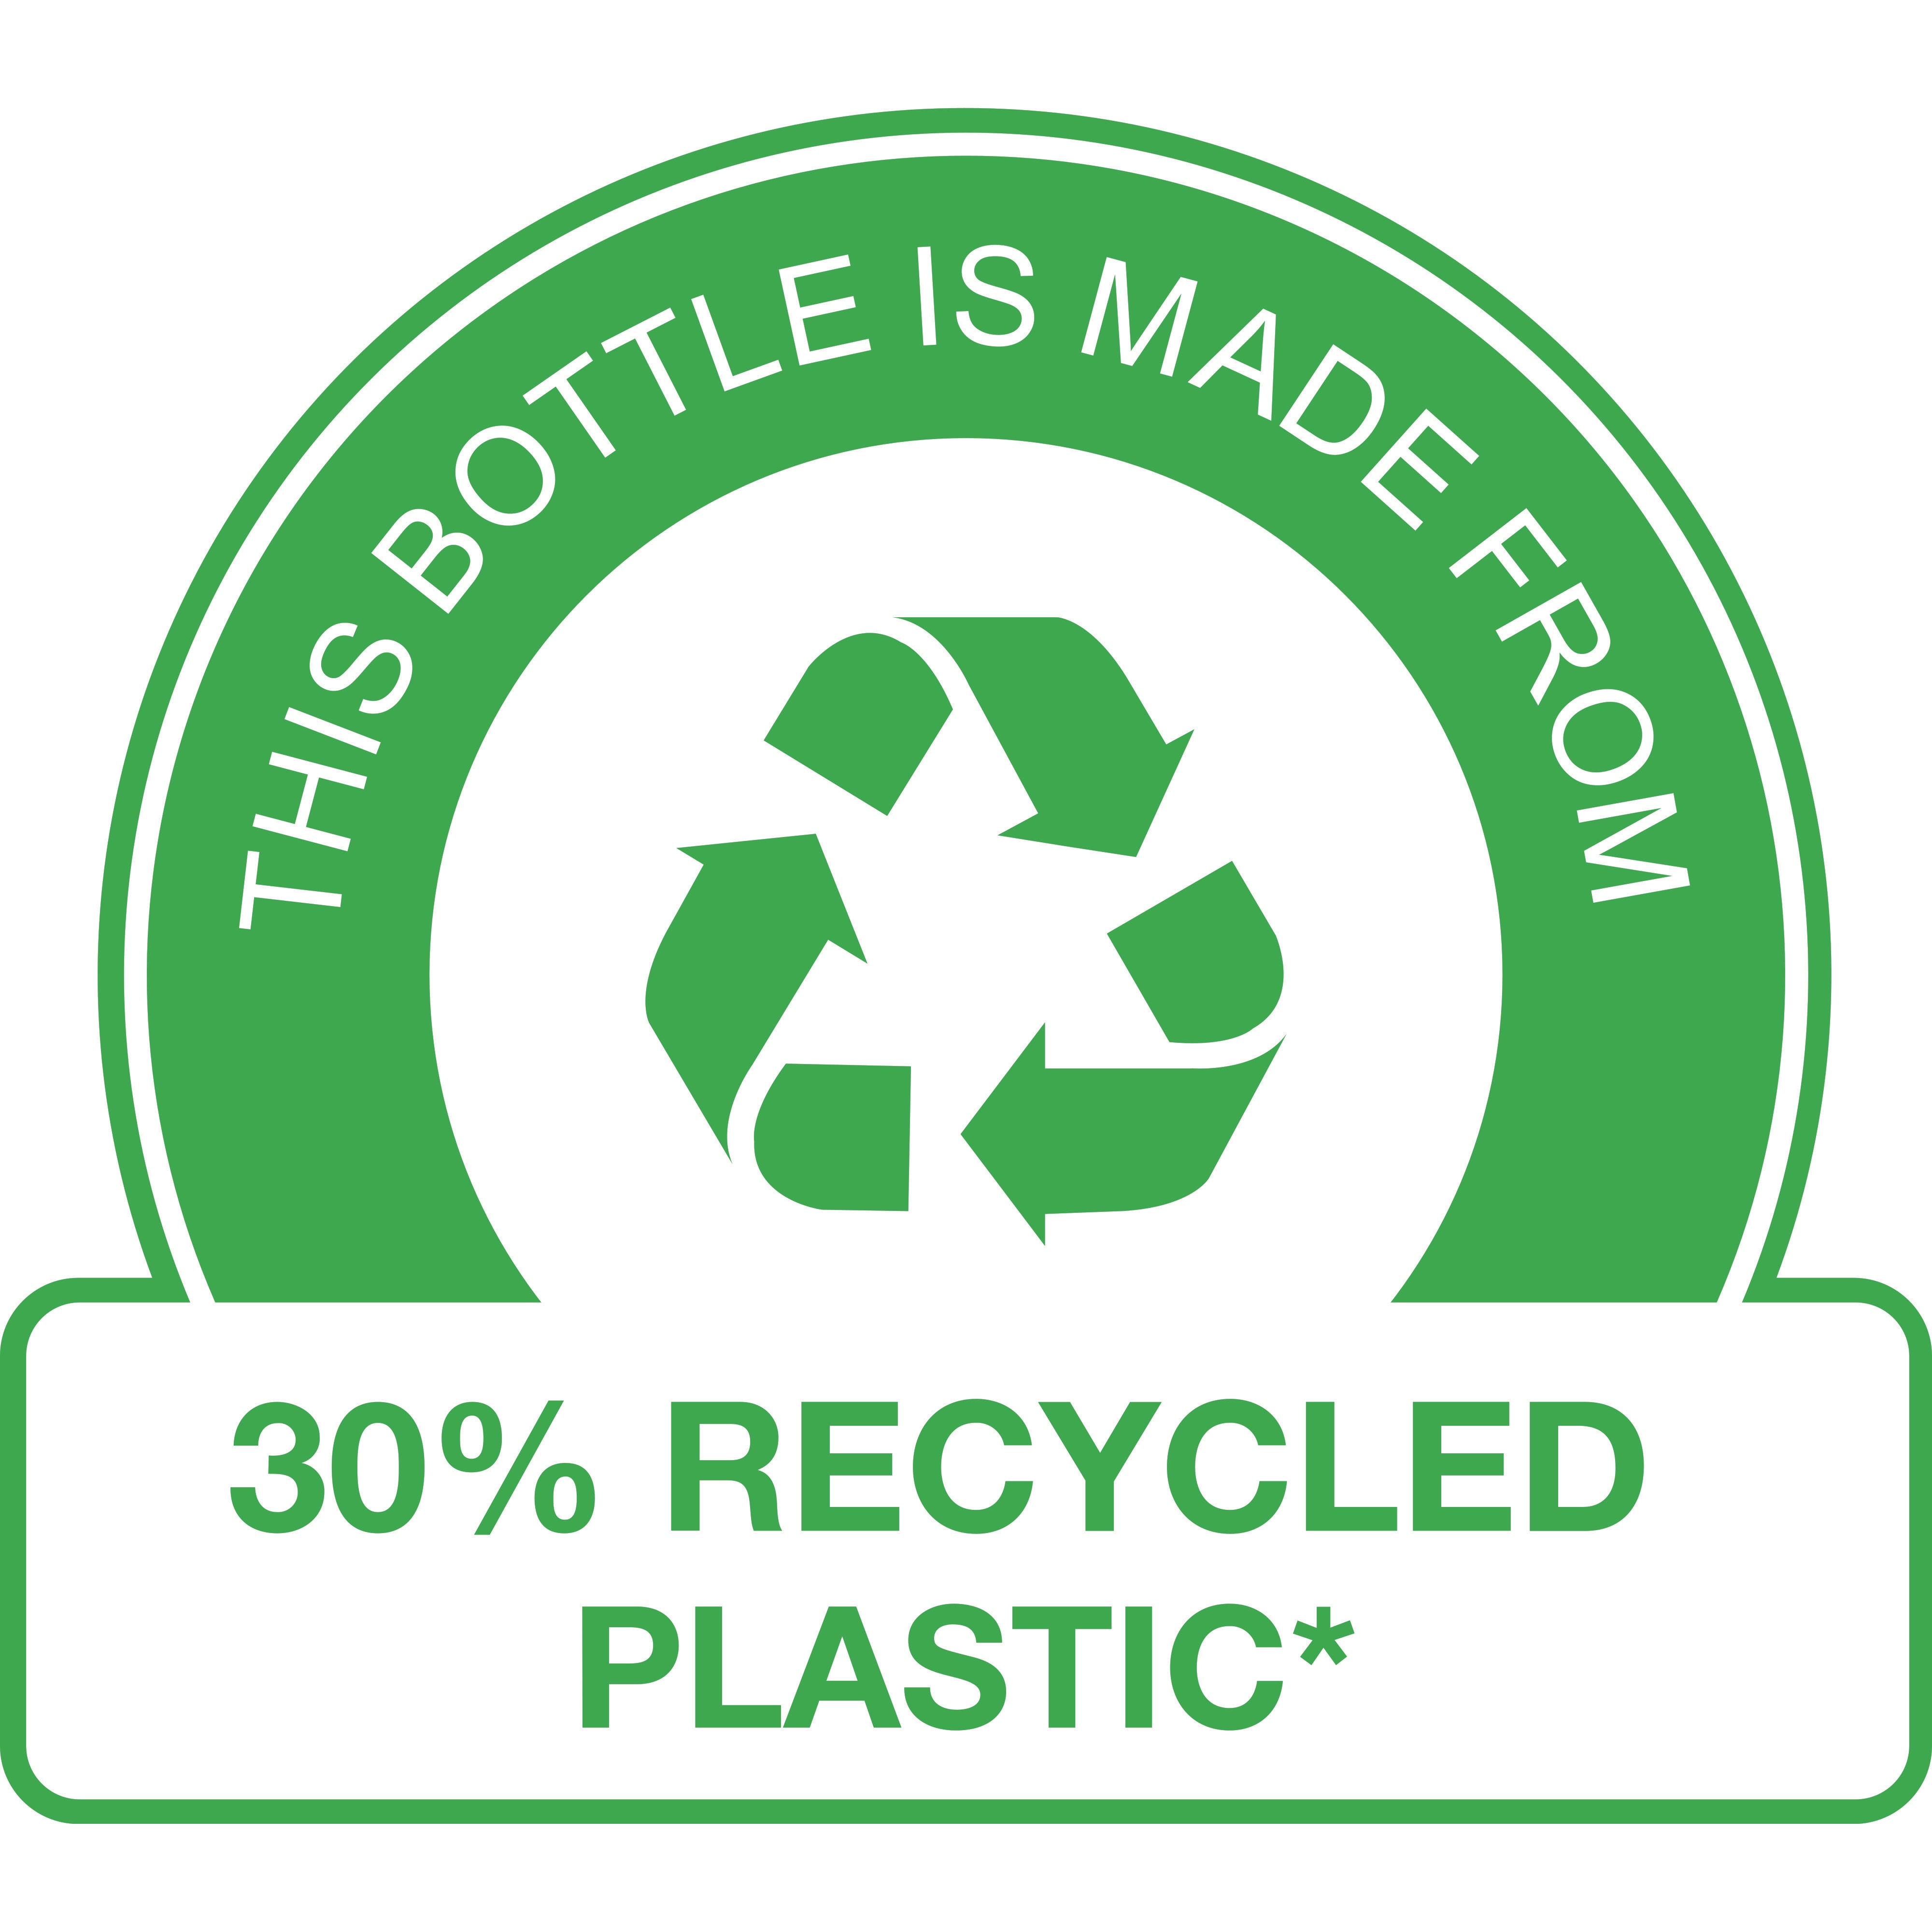 Acest recipient este fabricat din 30% plastic reciclat* 

(*nu include pompa)